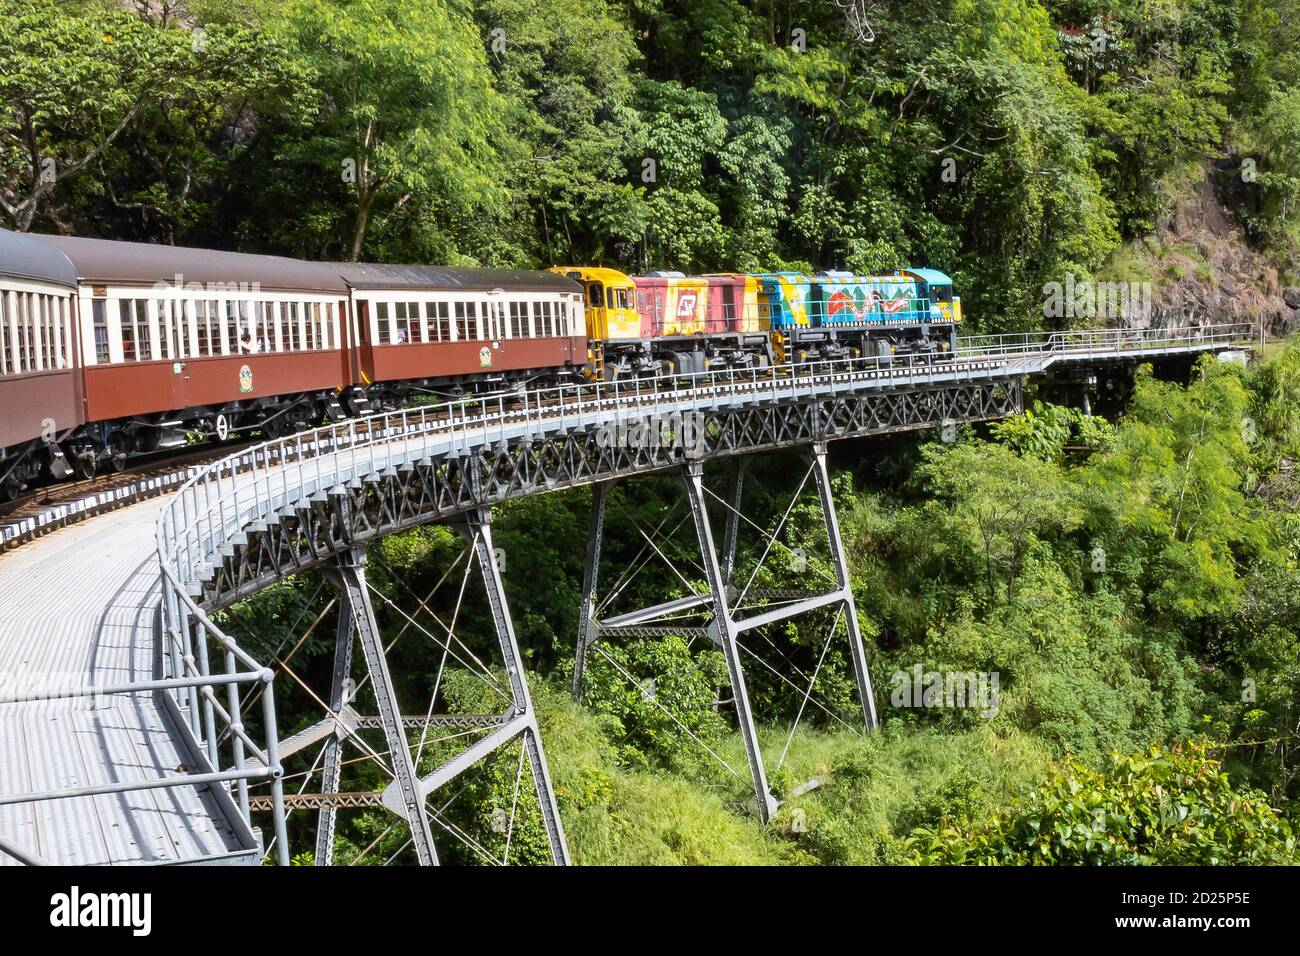 Kuranda, Australia - 19 Marzo 2020: Il treno panoramico Kuranda che passa attraverso la foresta pluviale, è una delle attrazioni turistiche della zona di Cairns. Foto Stock